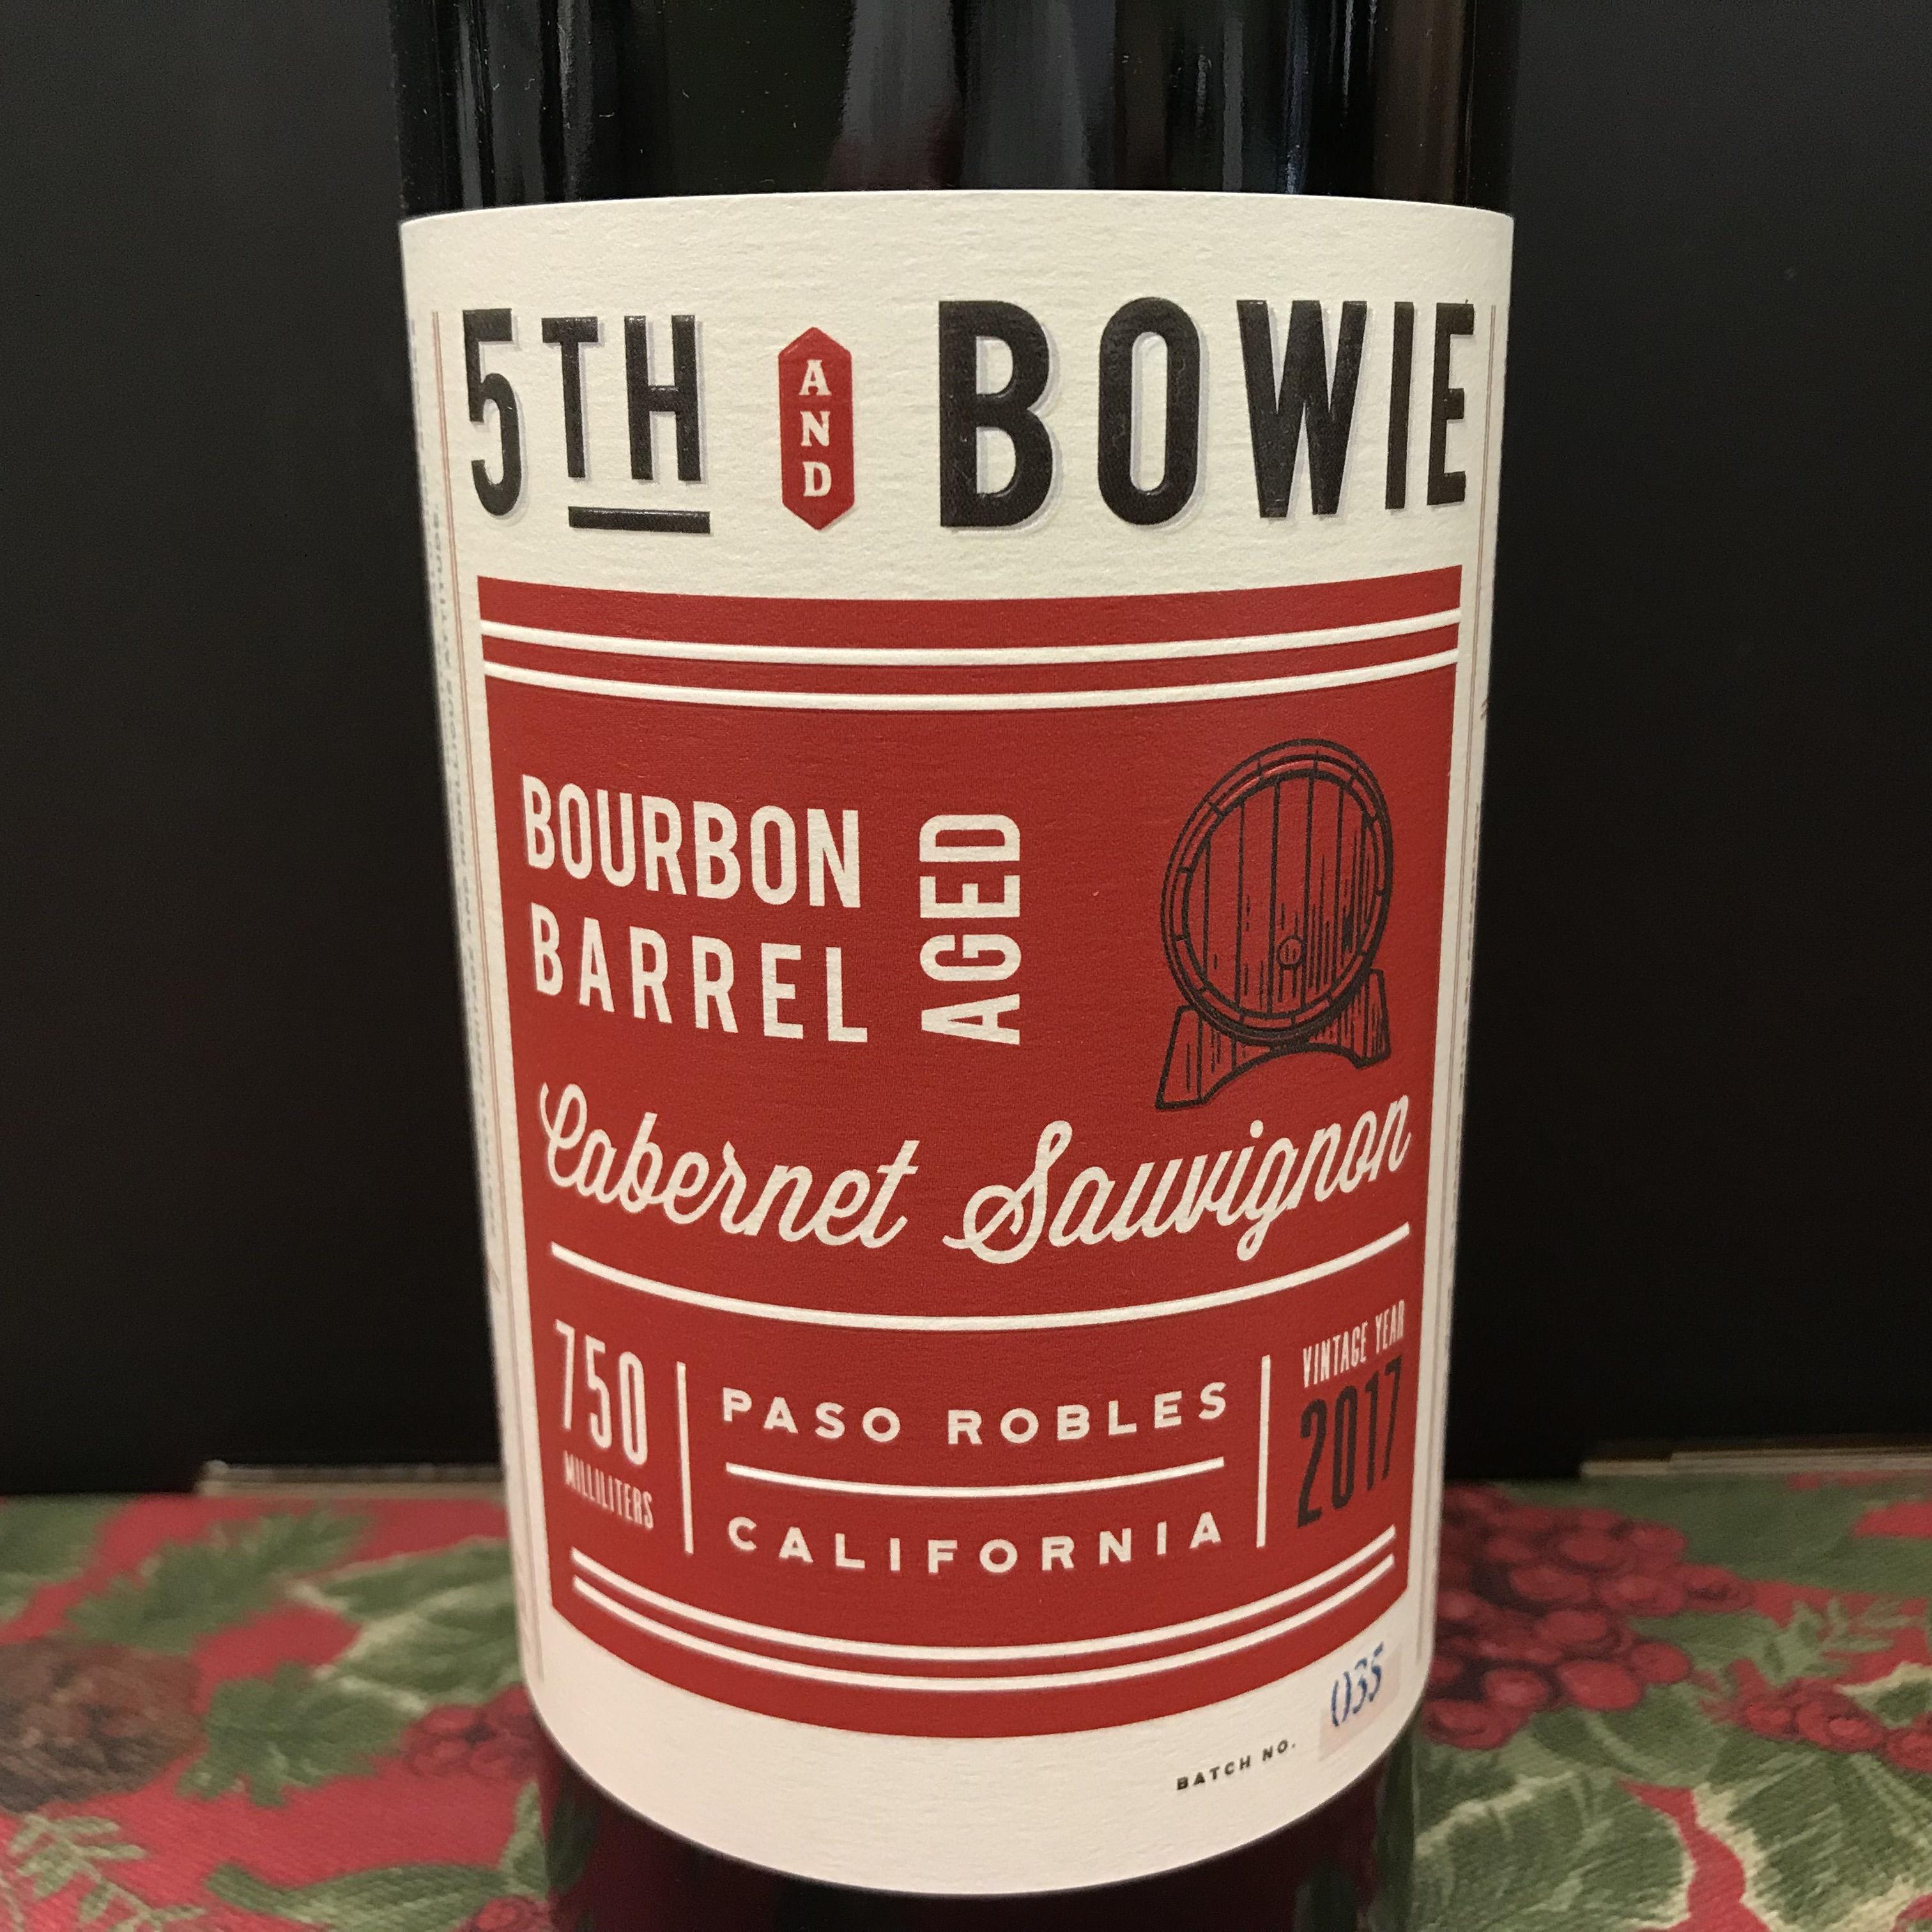 5th & Bowie Bourbon Barrel aged Cabernet Sauvignon 2017